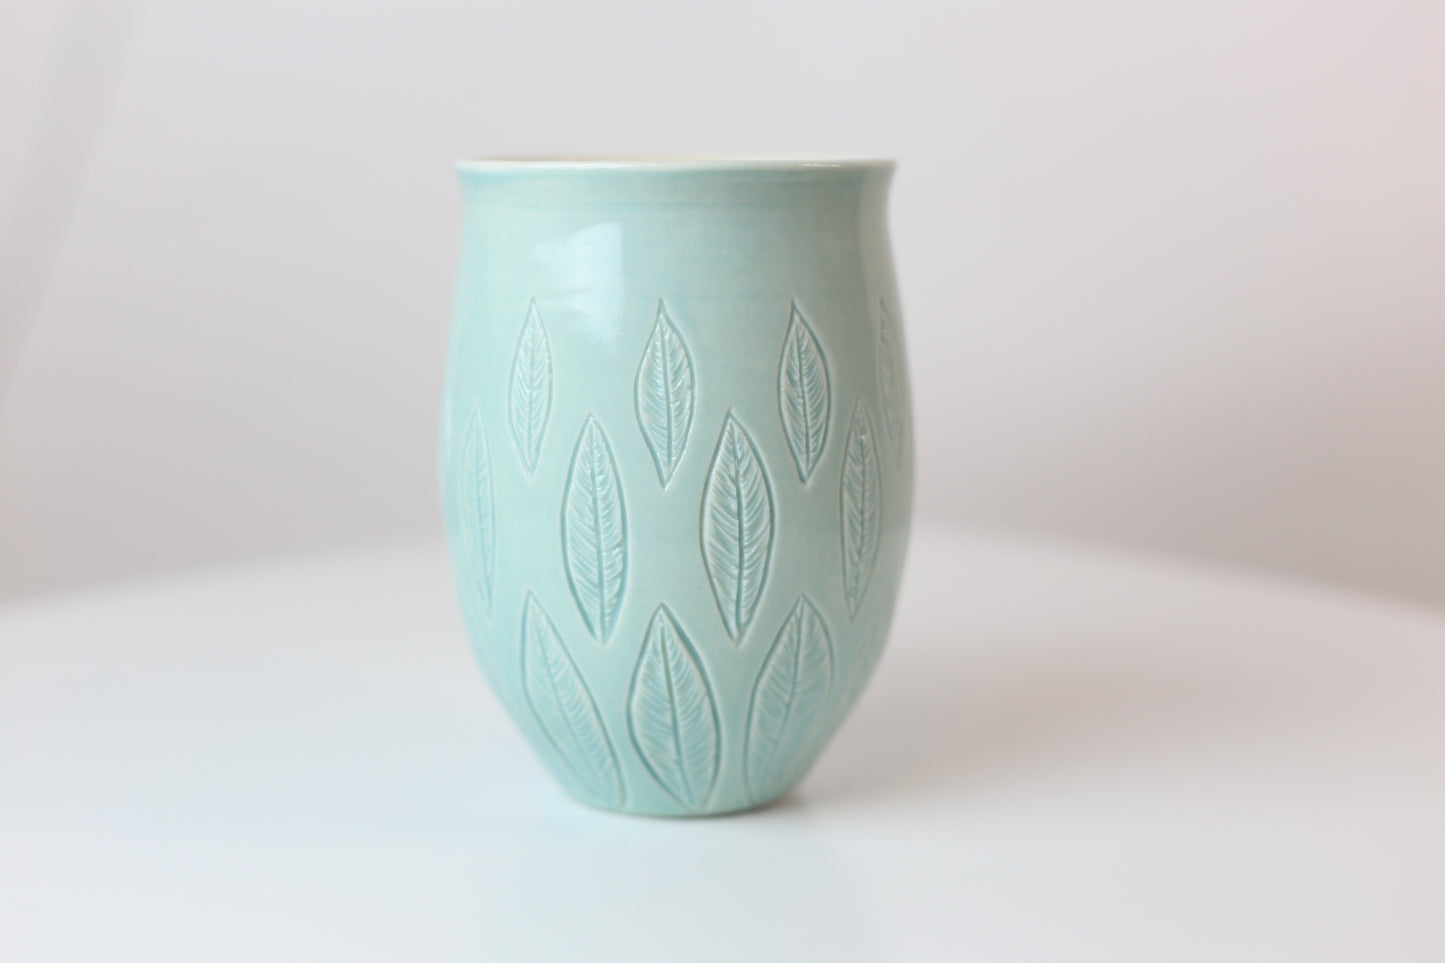 Large porcelain mug with leaf design in turquoise